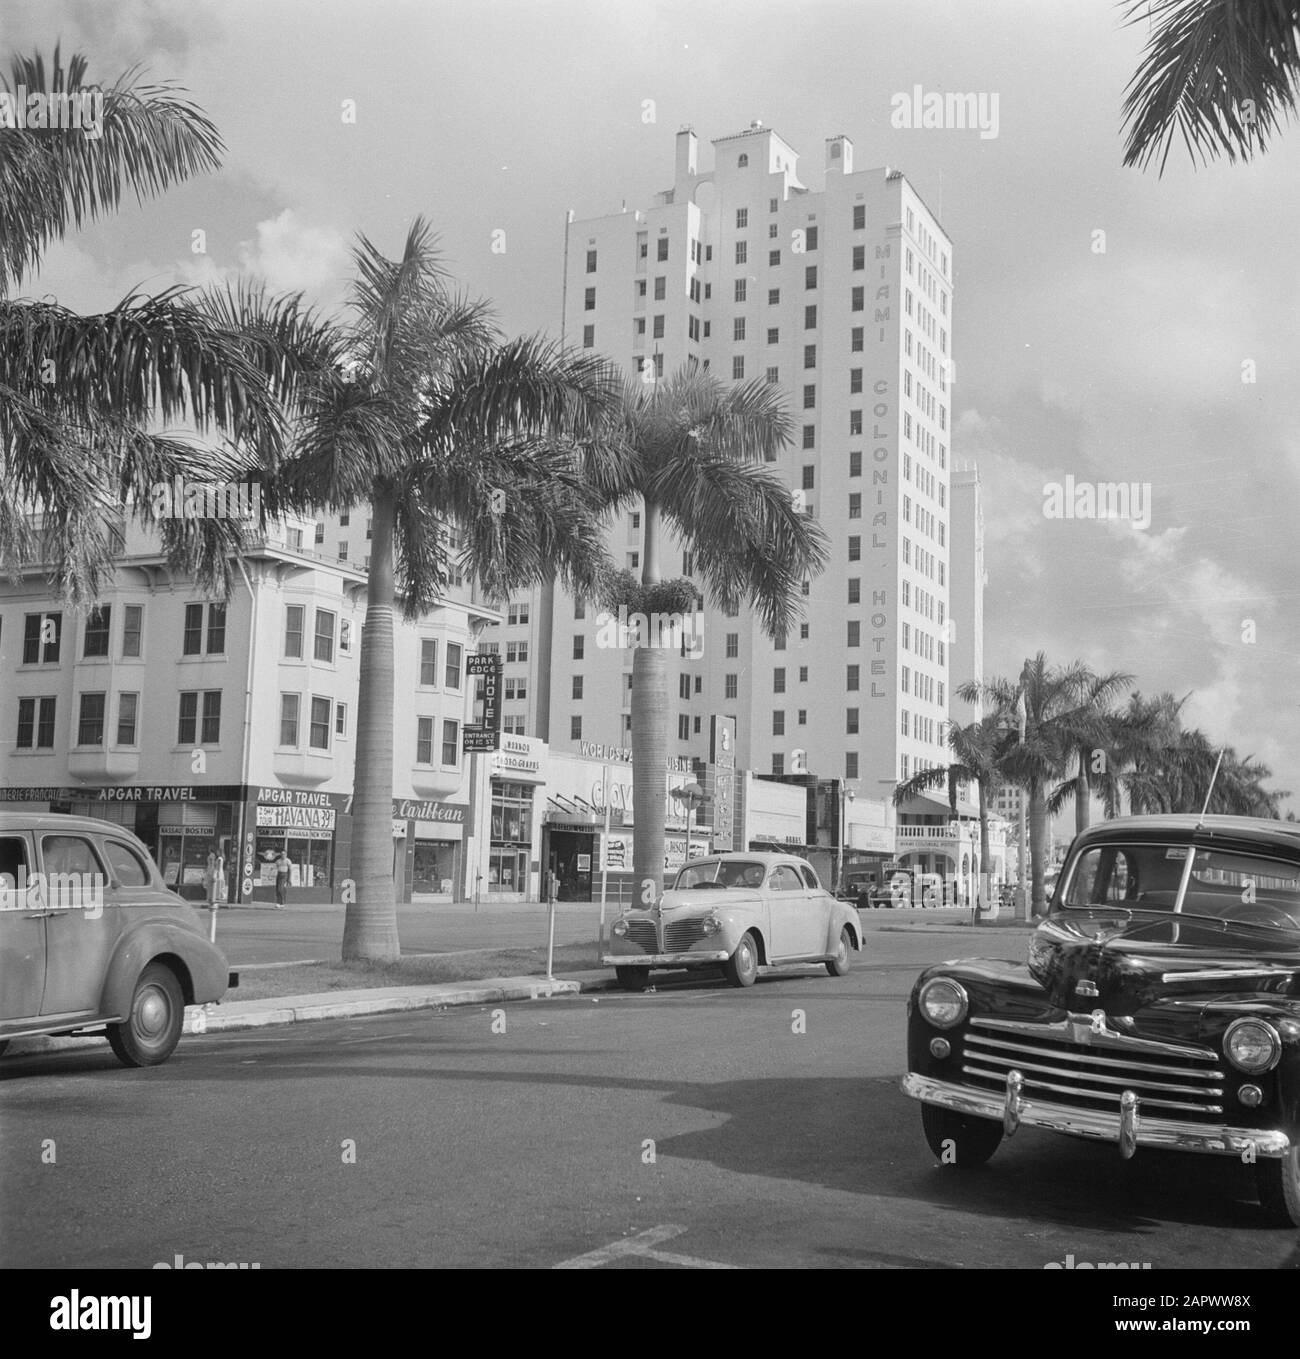 Reportage Miami Ocean Drive Bourvard à Miami avec le Colonial Hotel Date: 1948 lieu: Miami, USA mots clés: Hôtels, paysage urbain Banque D'Images